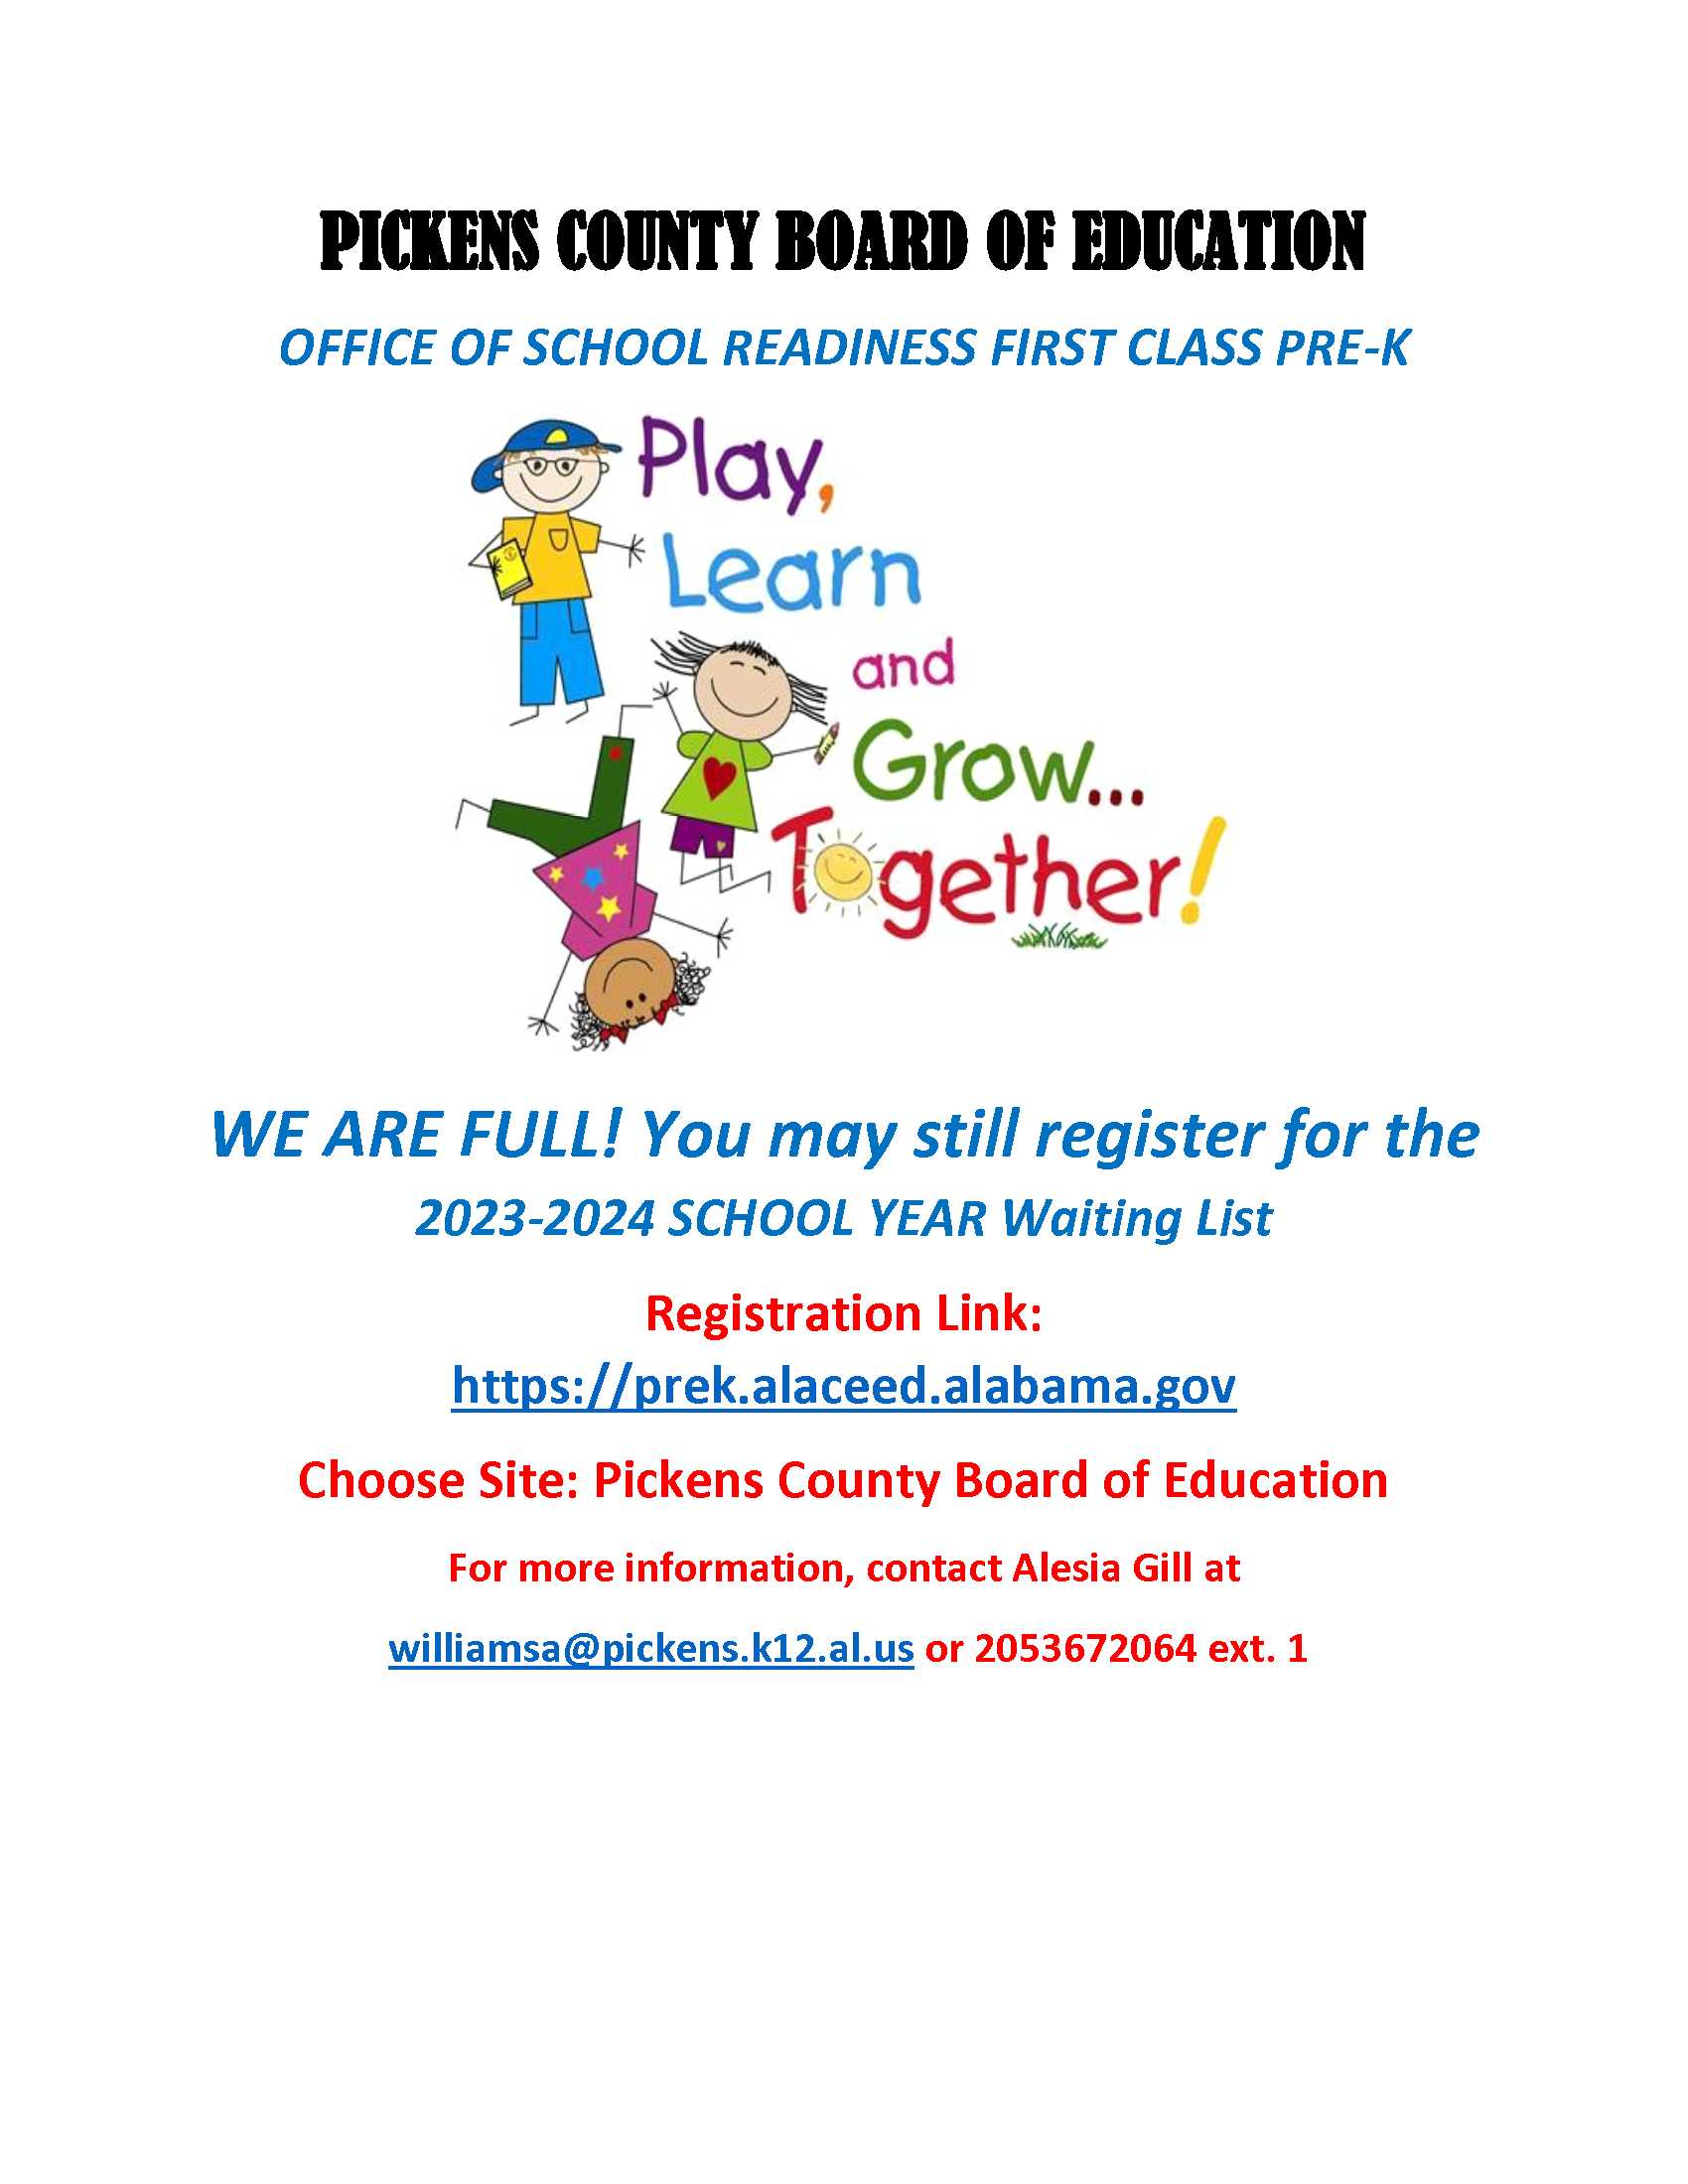 Pickens County Schools' Pre-Kindergarten Program